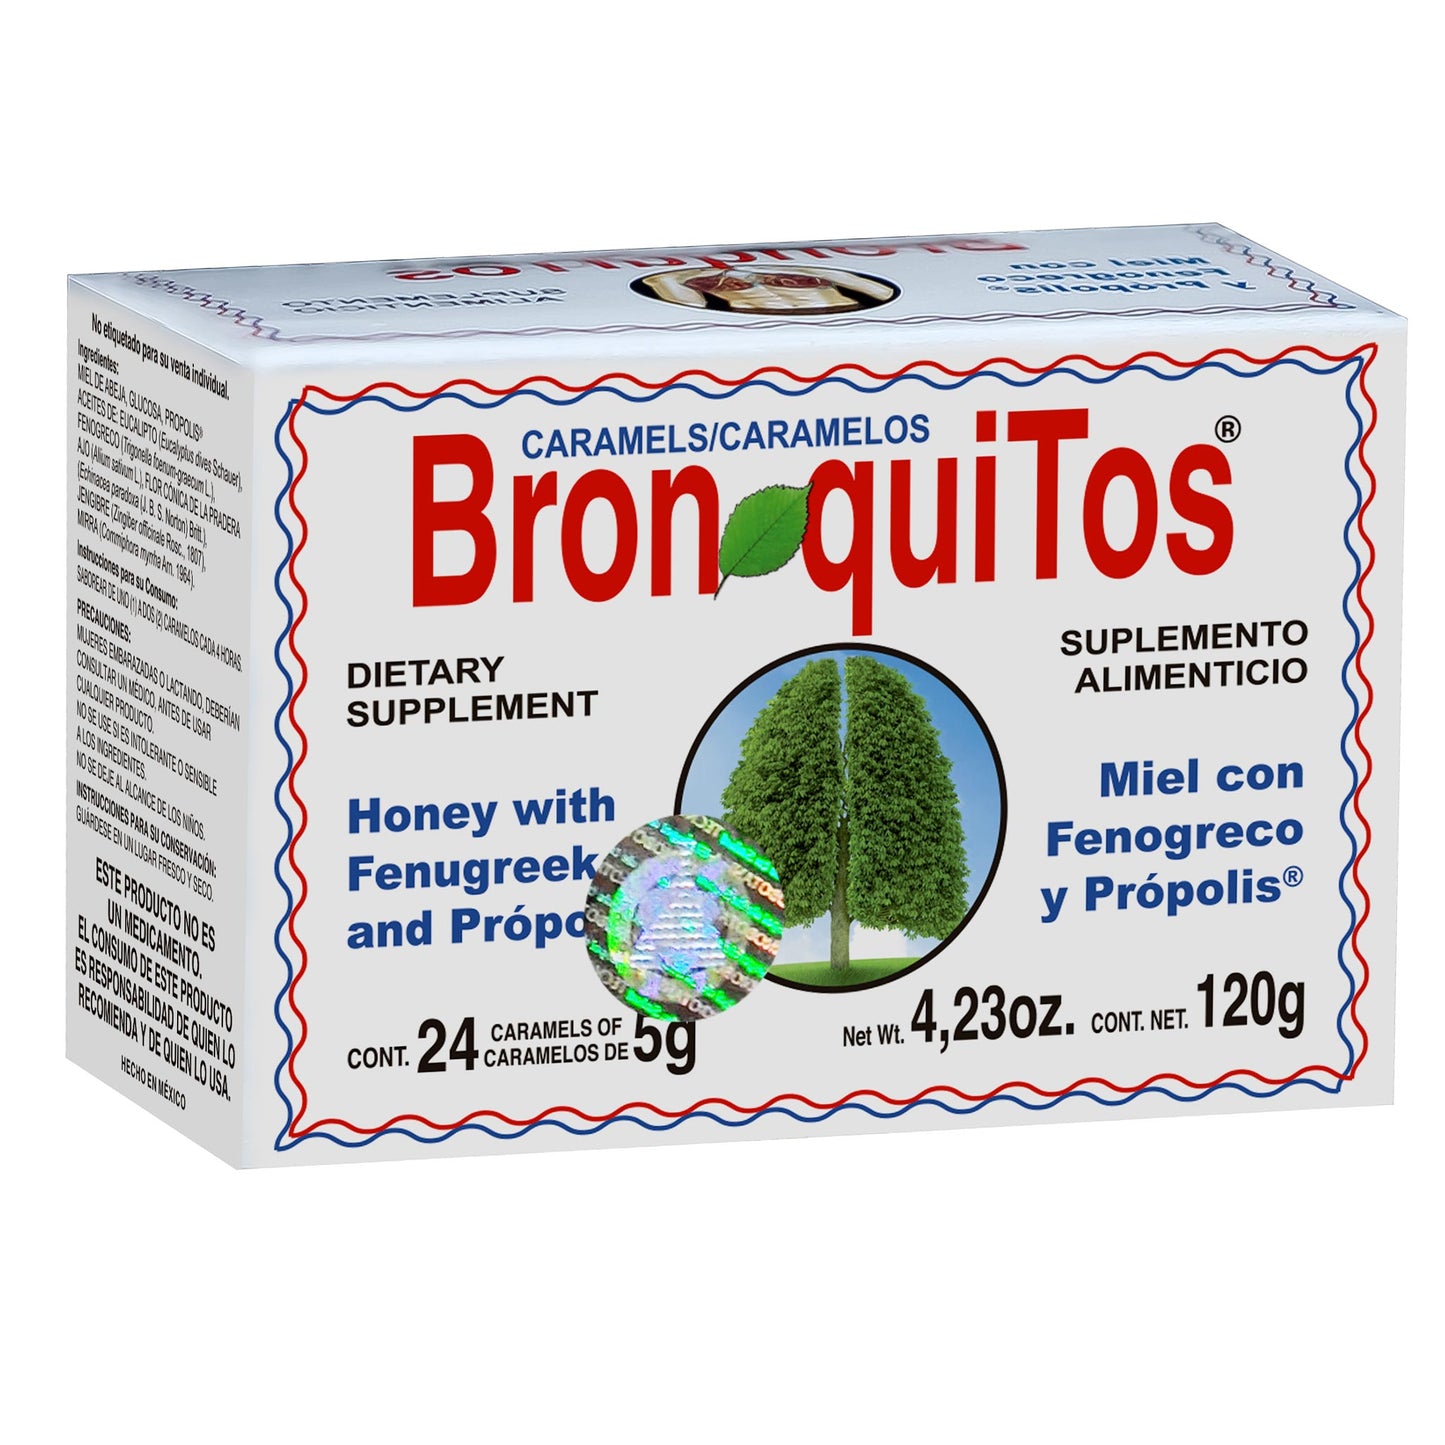 BRONQUITOS ® 24 caramelos